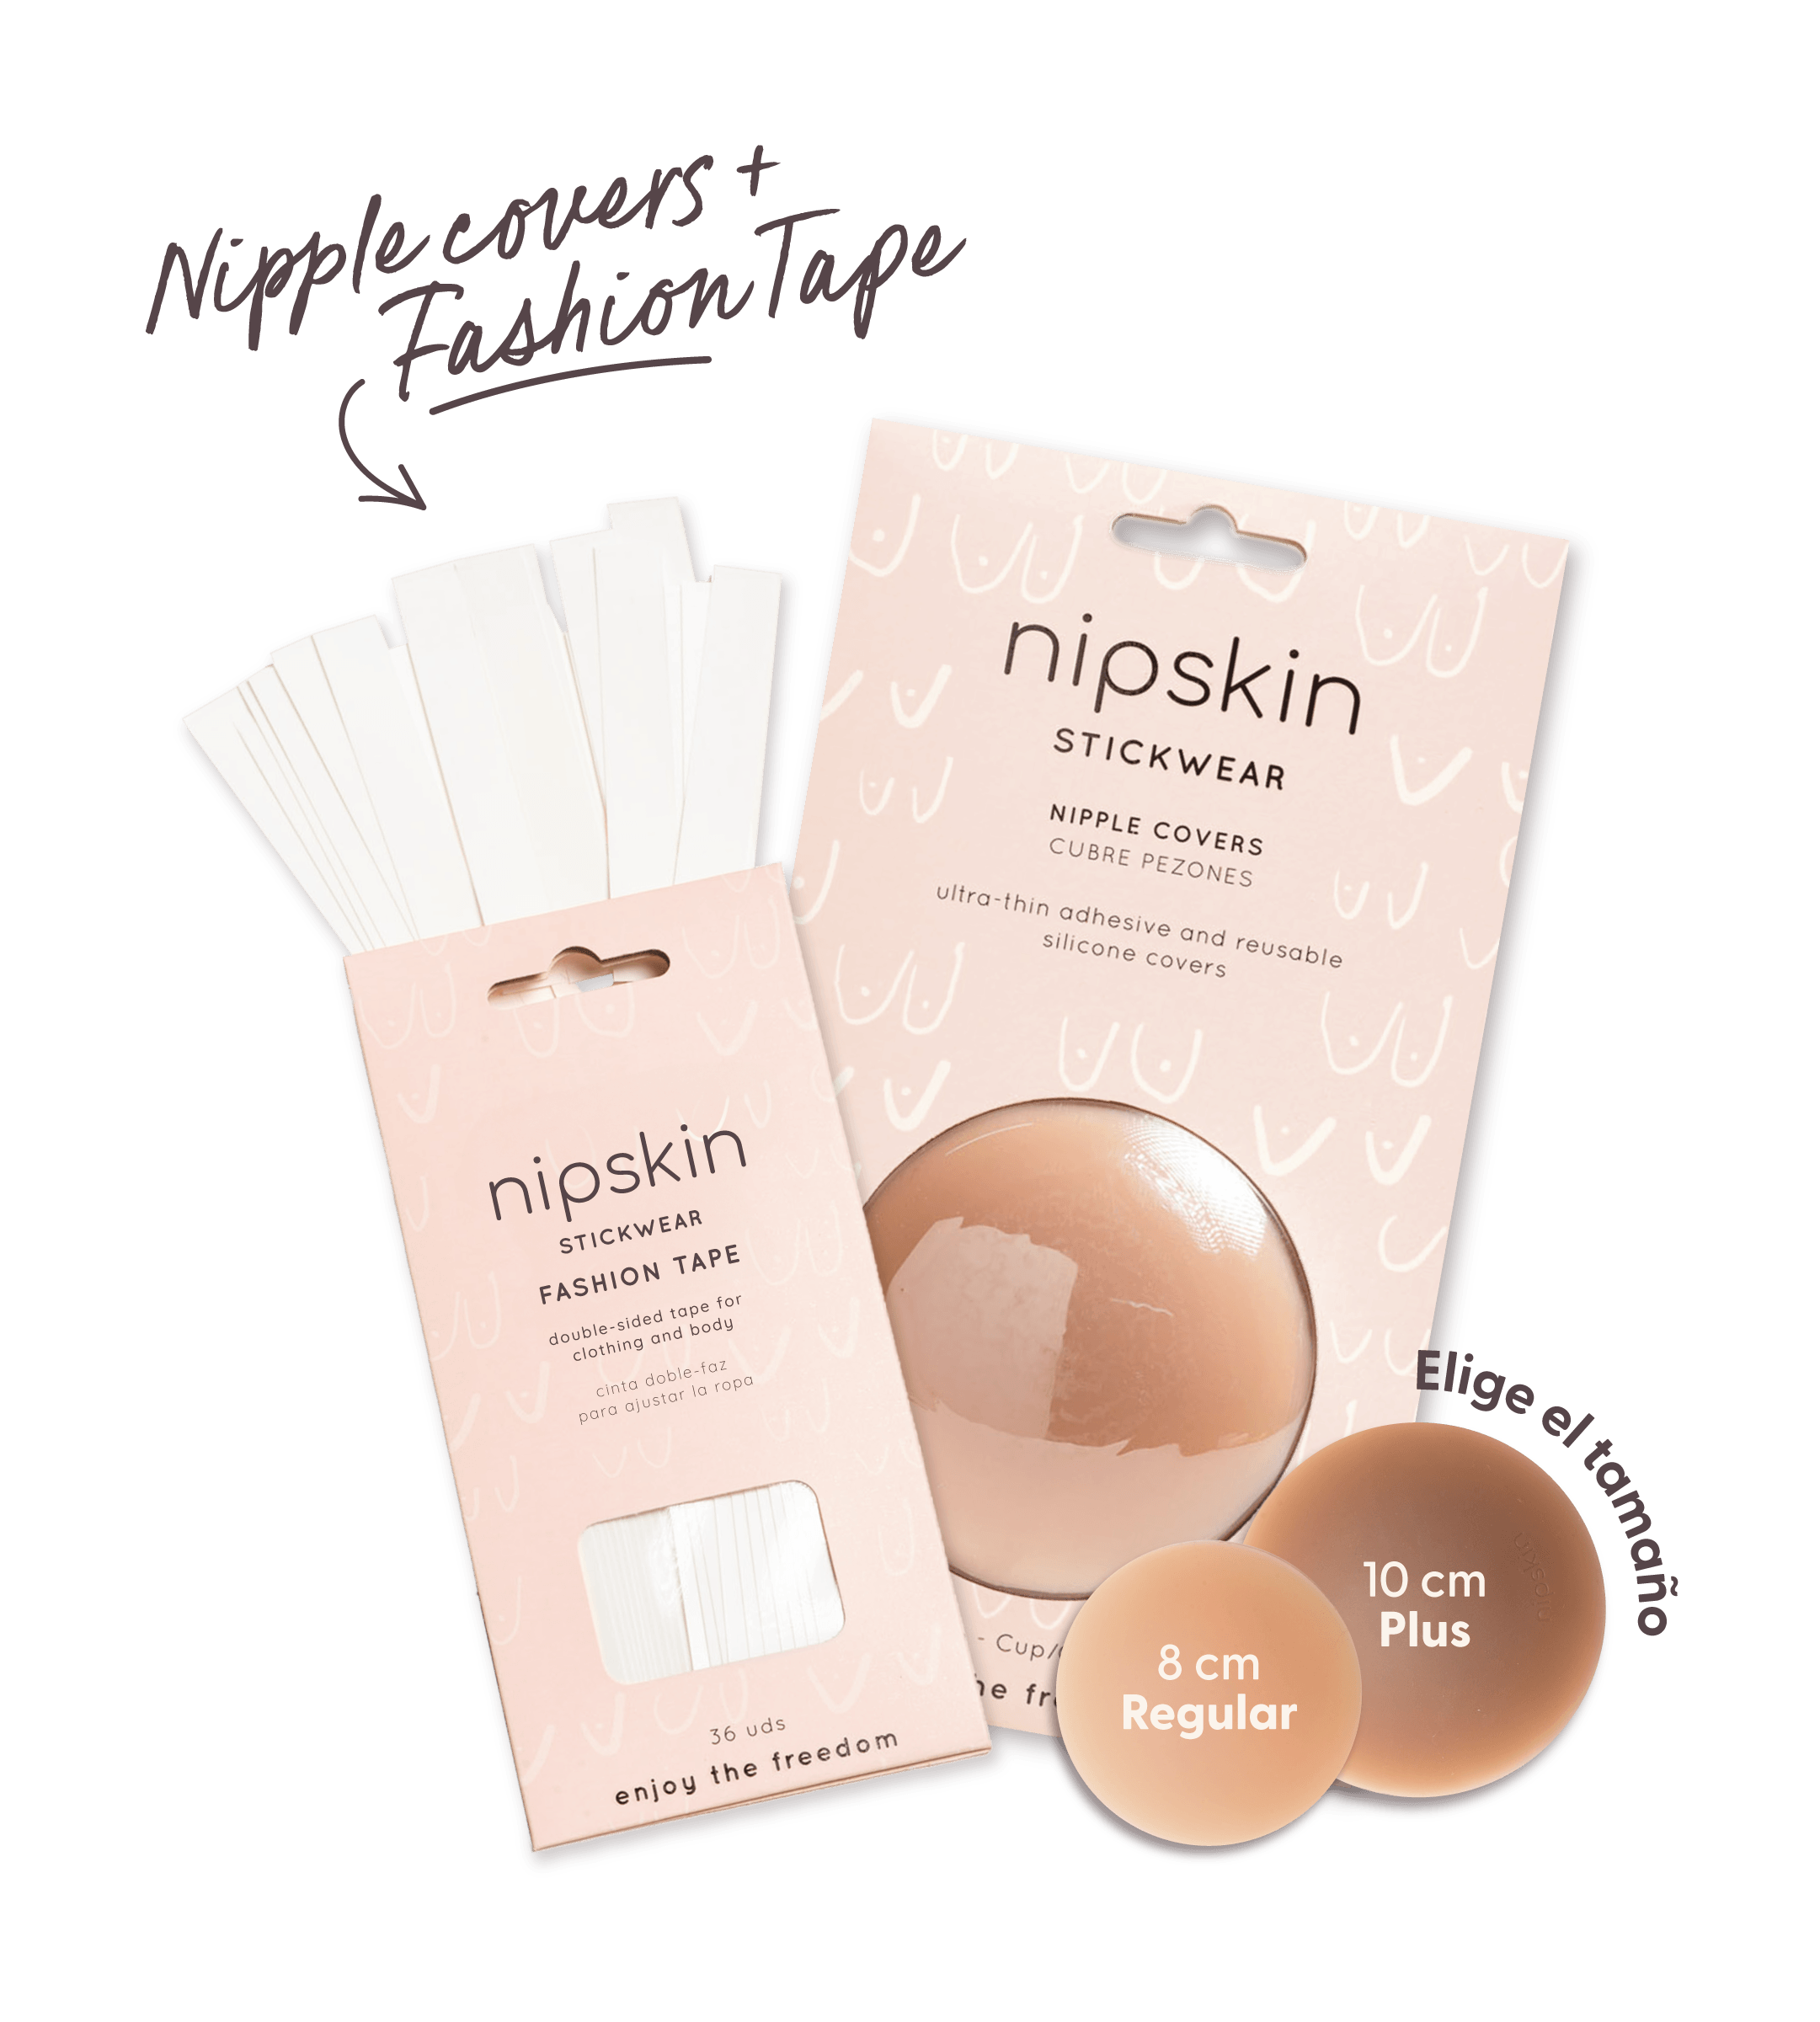 Medium Silicone Nippies, Silicone Nipple Covers in Medium 